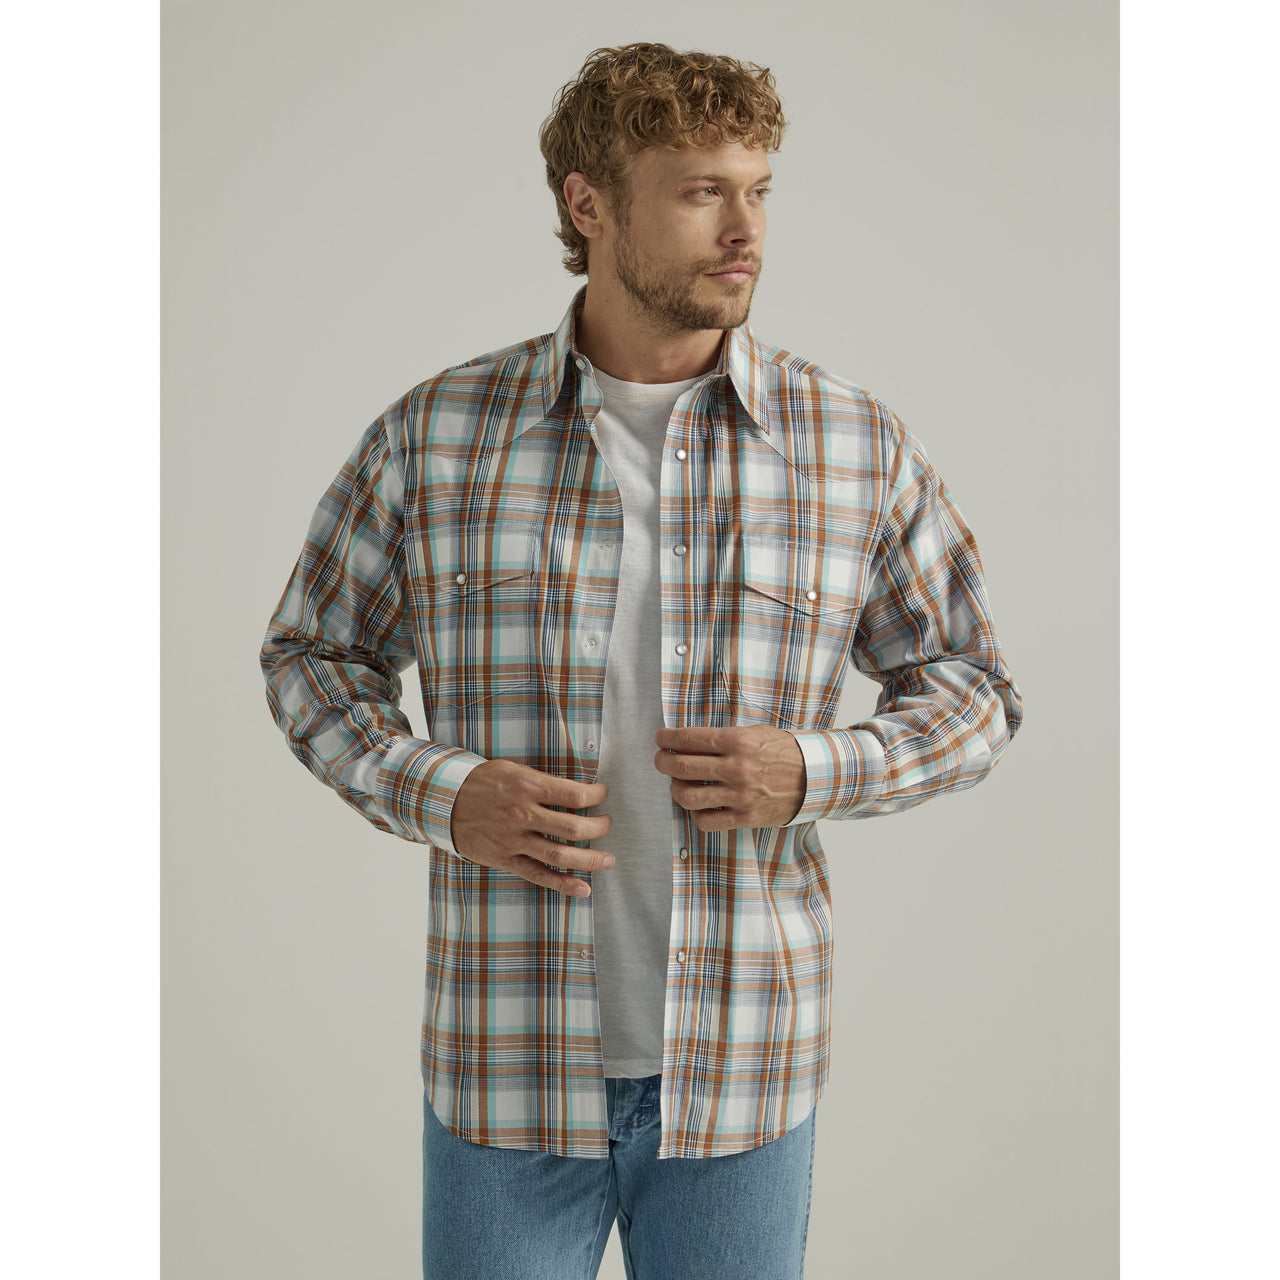 Wrangler Men's Wrinkle Free Long Sleeve Shirt - Brown